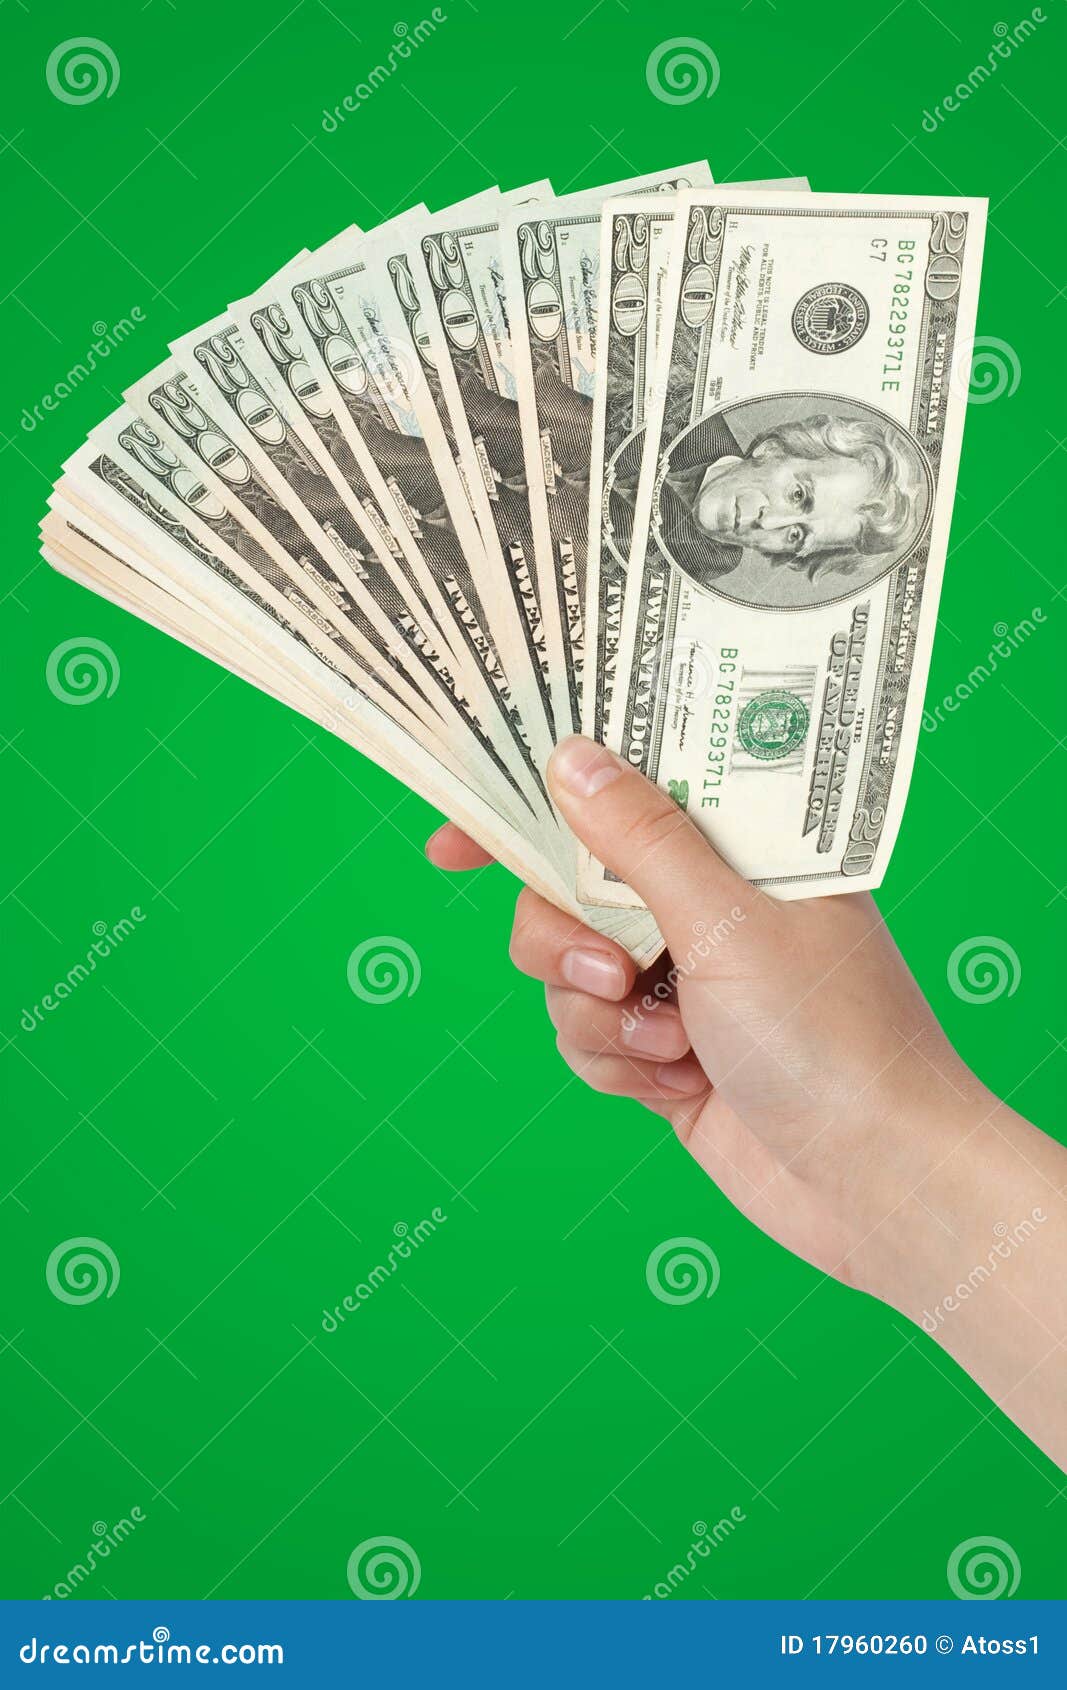 Футаж money green. Деньги на зеленом фоне. Рука с деньгами на зелёном фоне. Пачка денег на зеленом фоне. Деньги в руках.